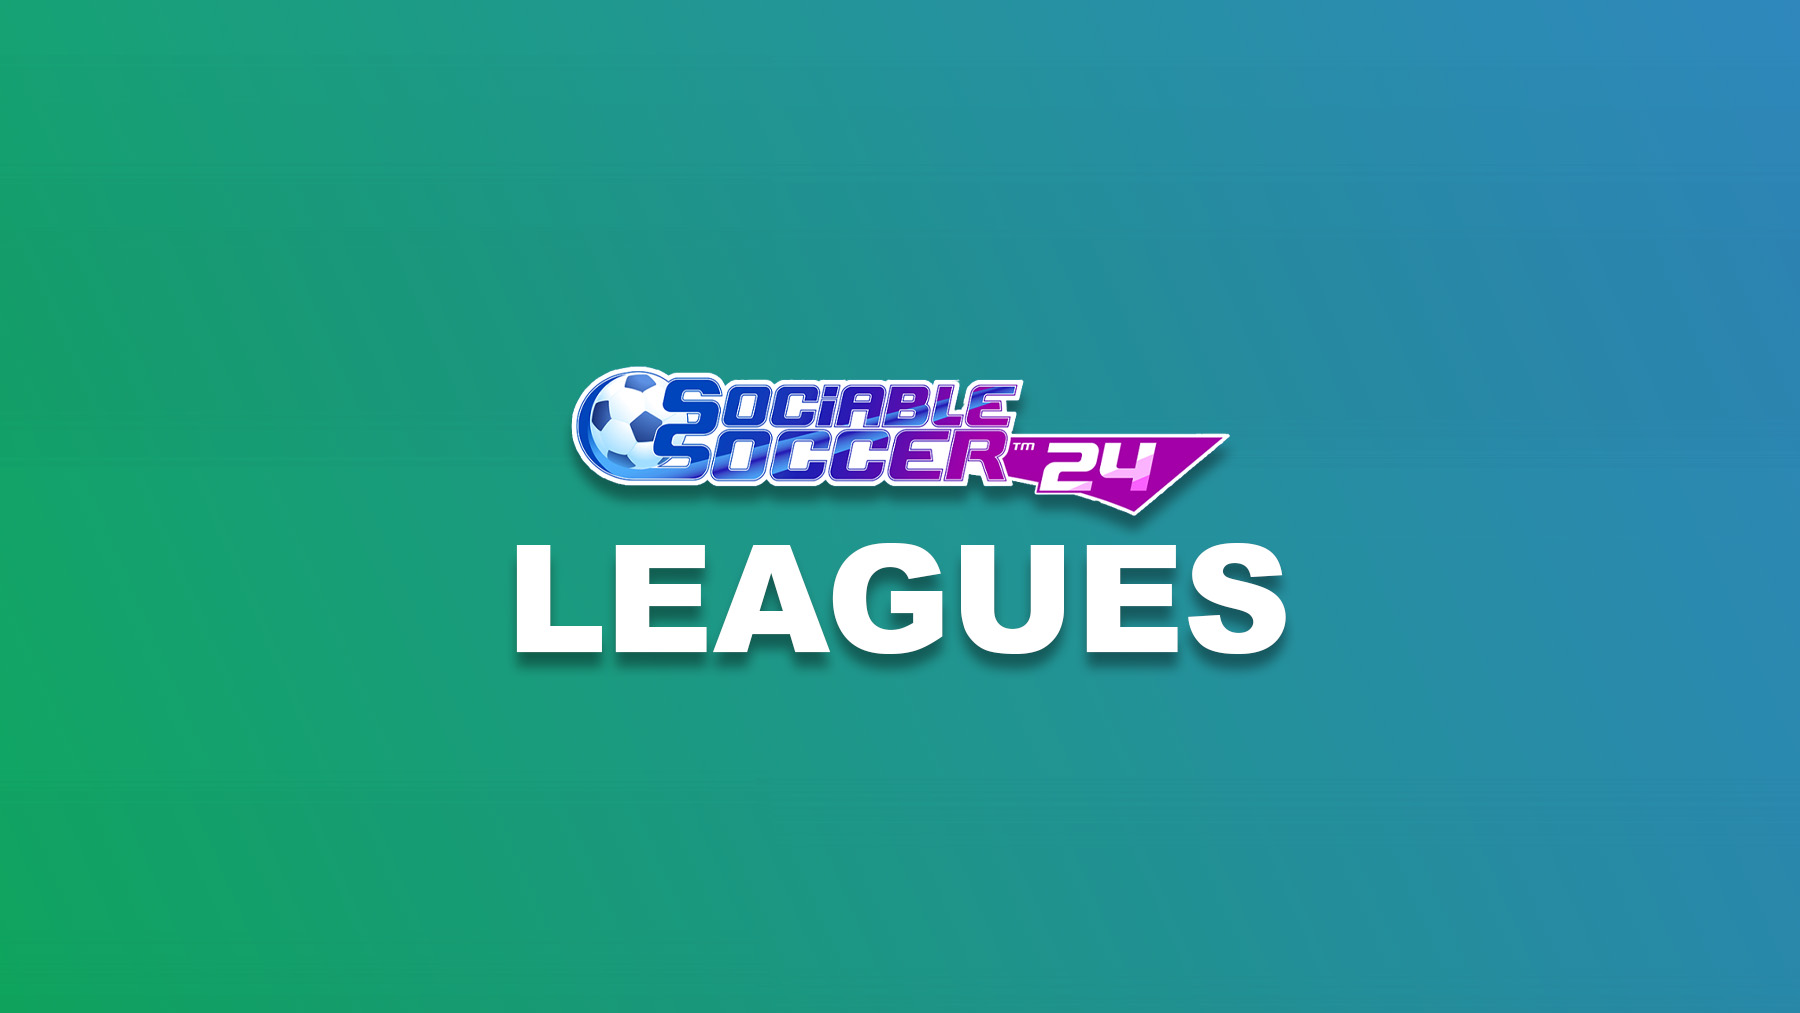 Sociable Soccer 24 – Leagues